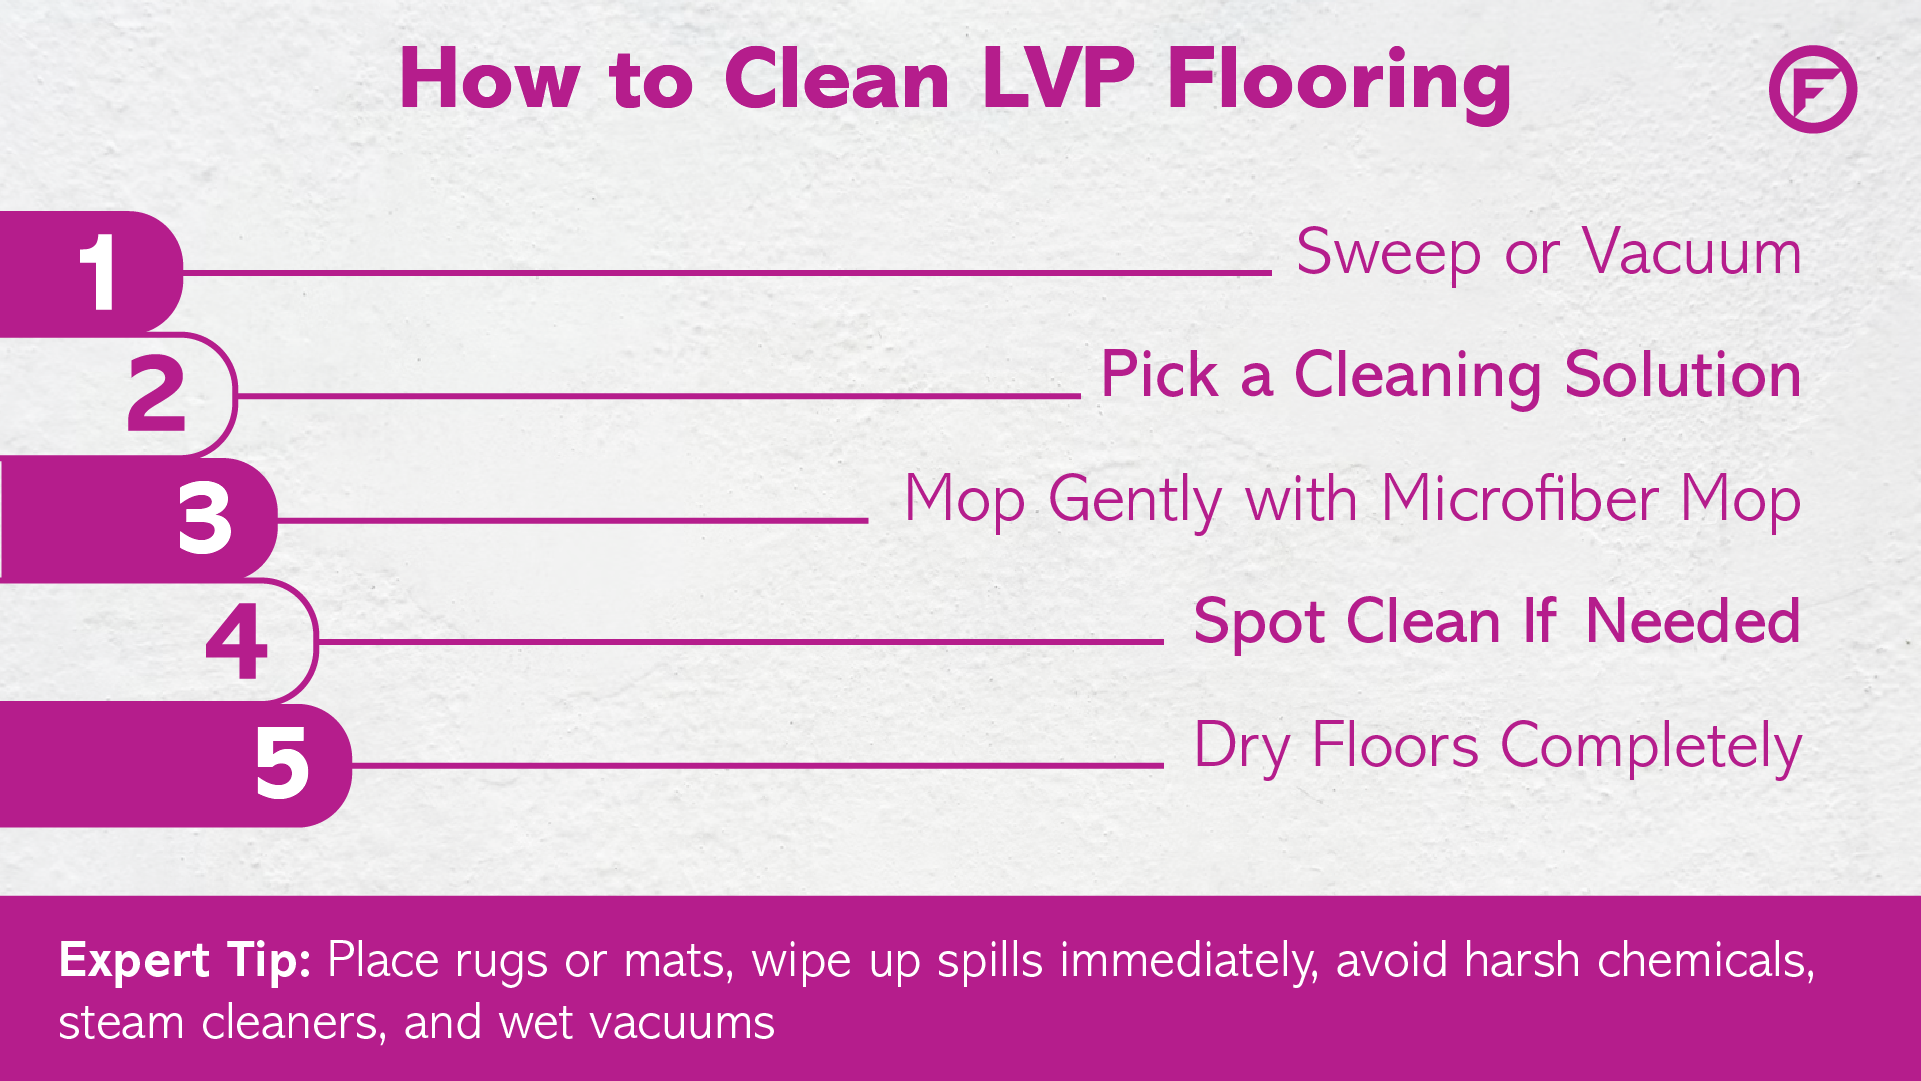 How to Clean Vinyl Plank Flooring (LVP Floors)